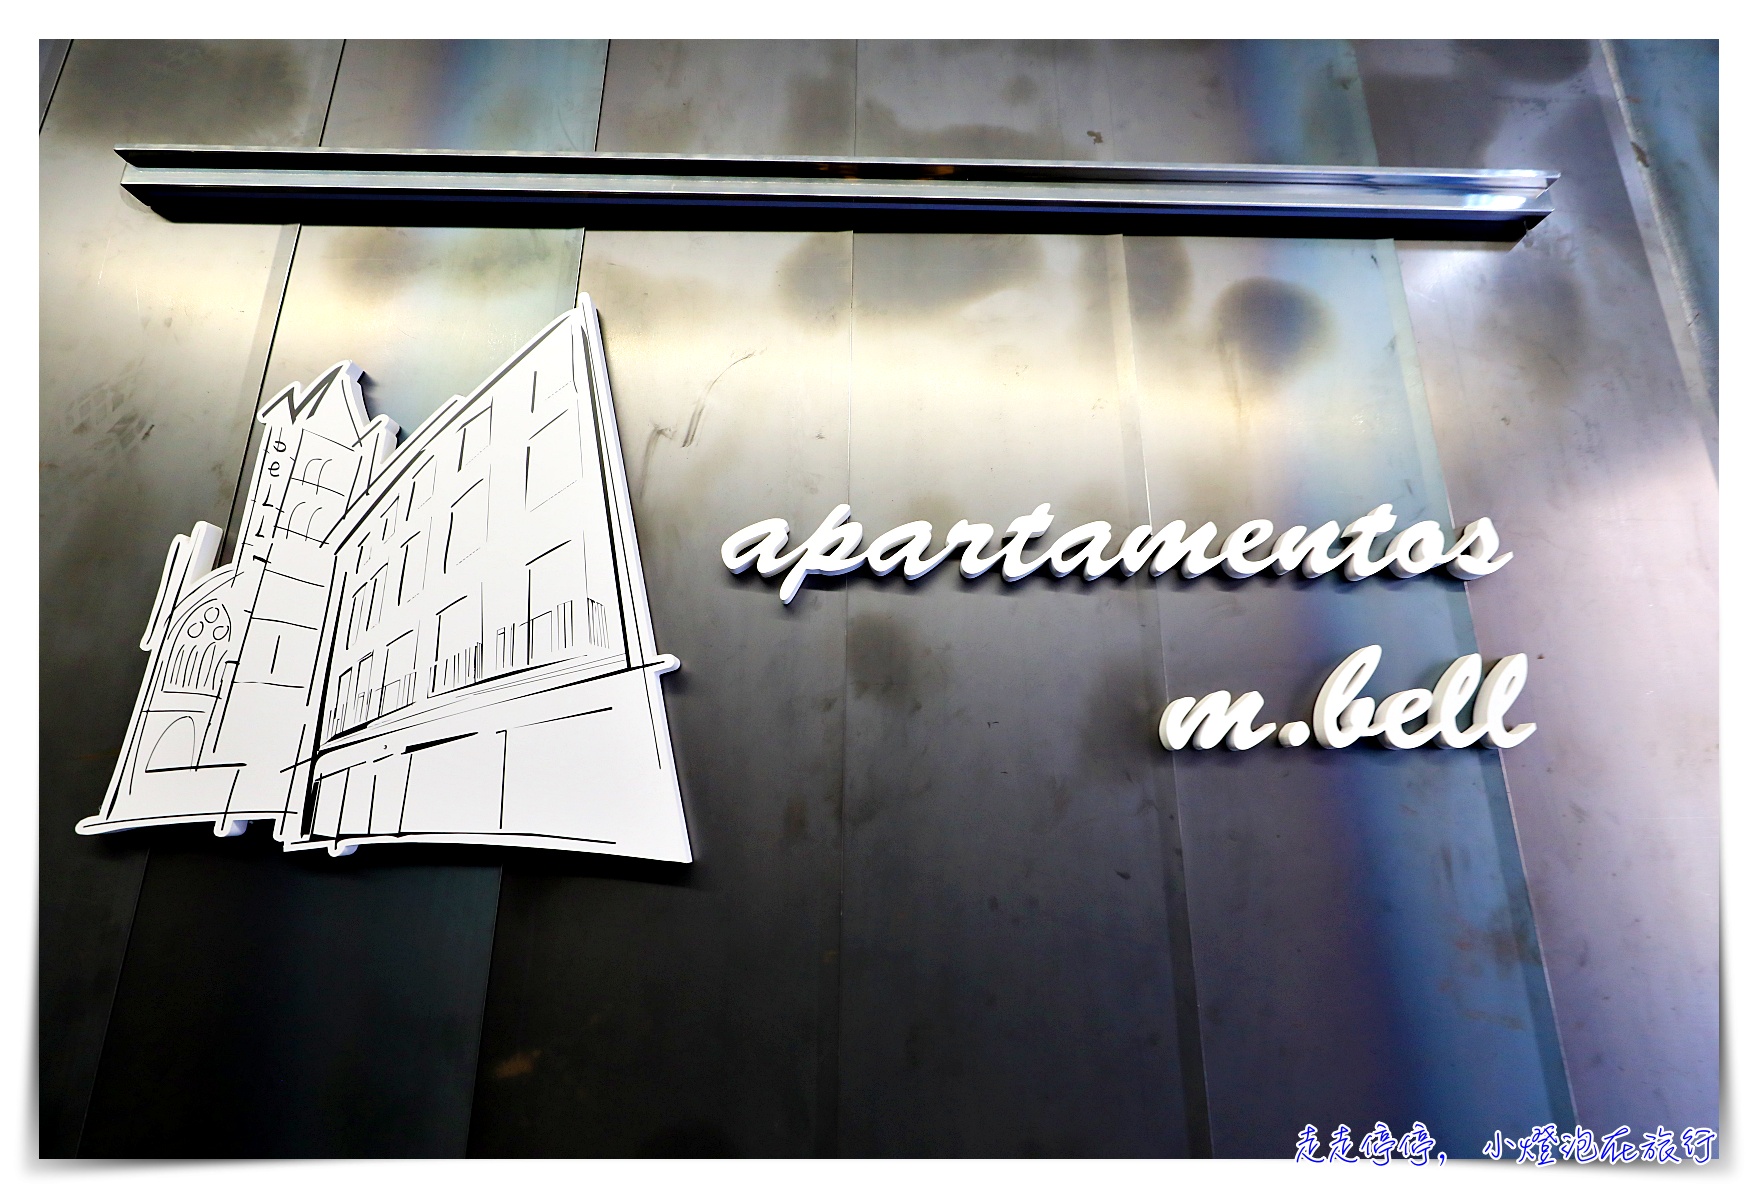 西班牙萊昂Leon｜Apartamentos m.bell 有管理公寓推薦，近萊昂大教堂，設備細緻完整、溝通非常仔細貼心